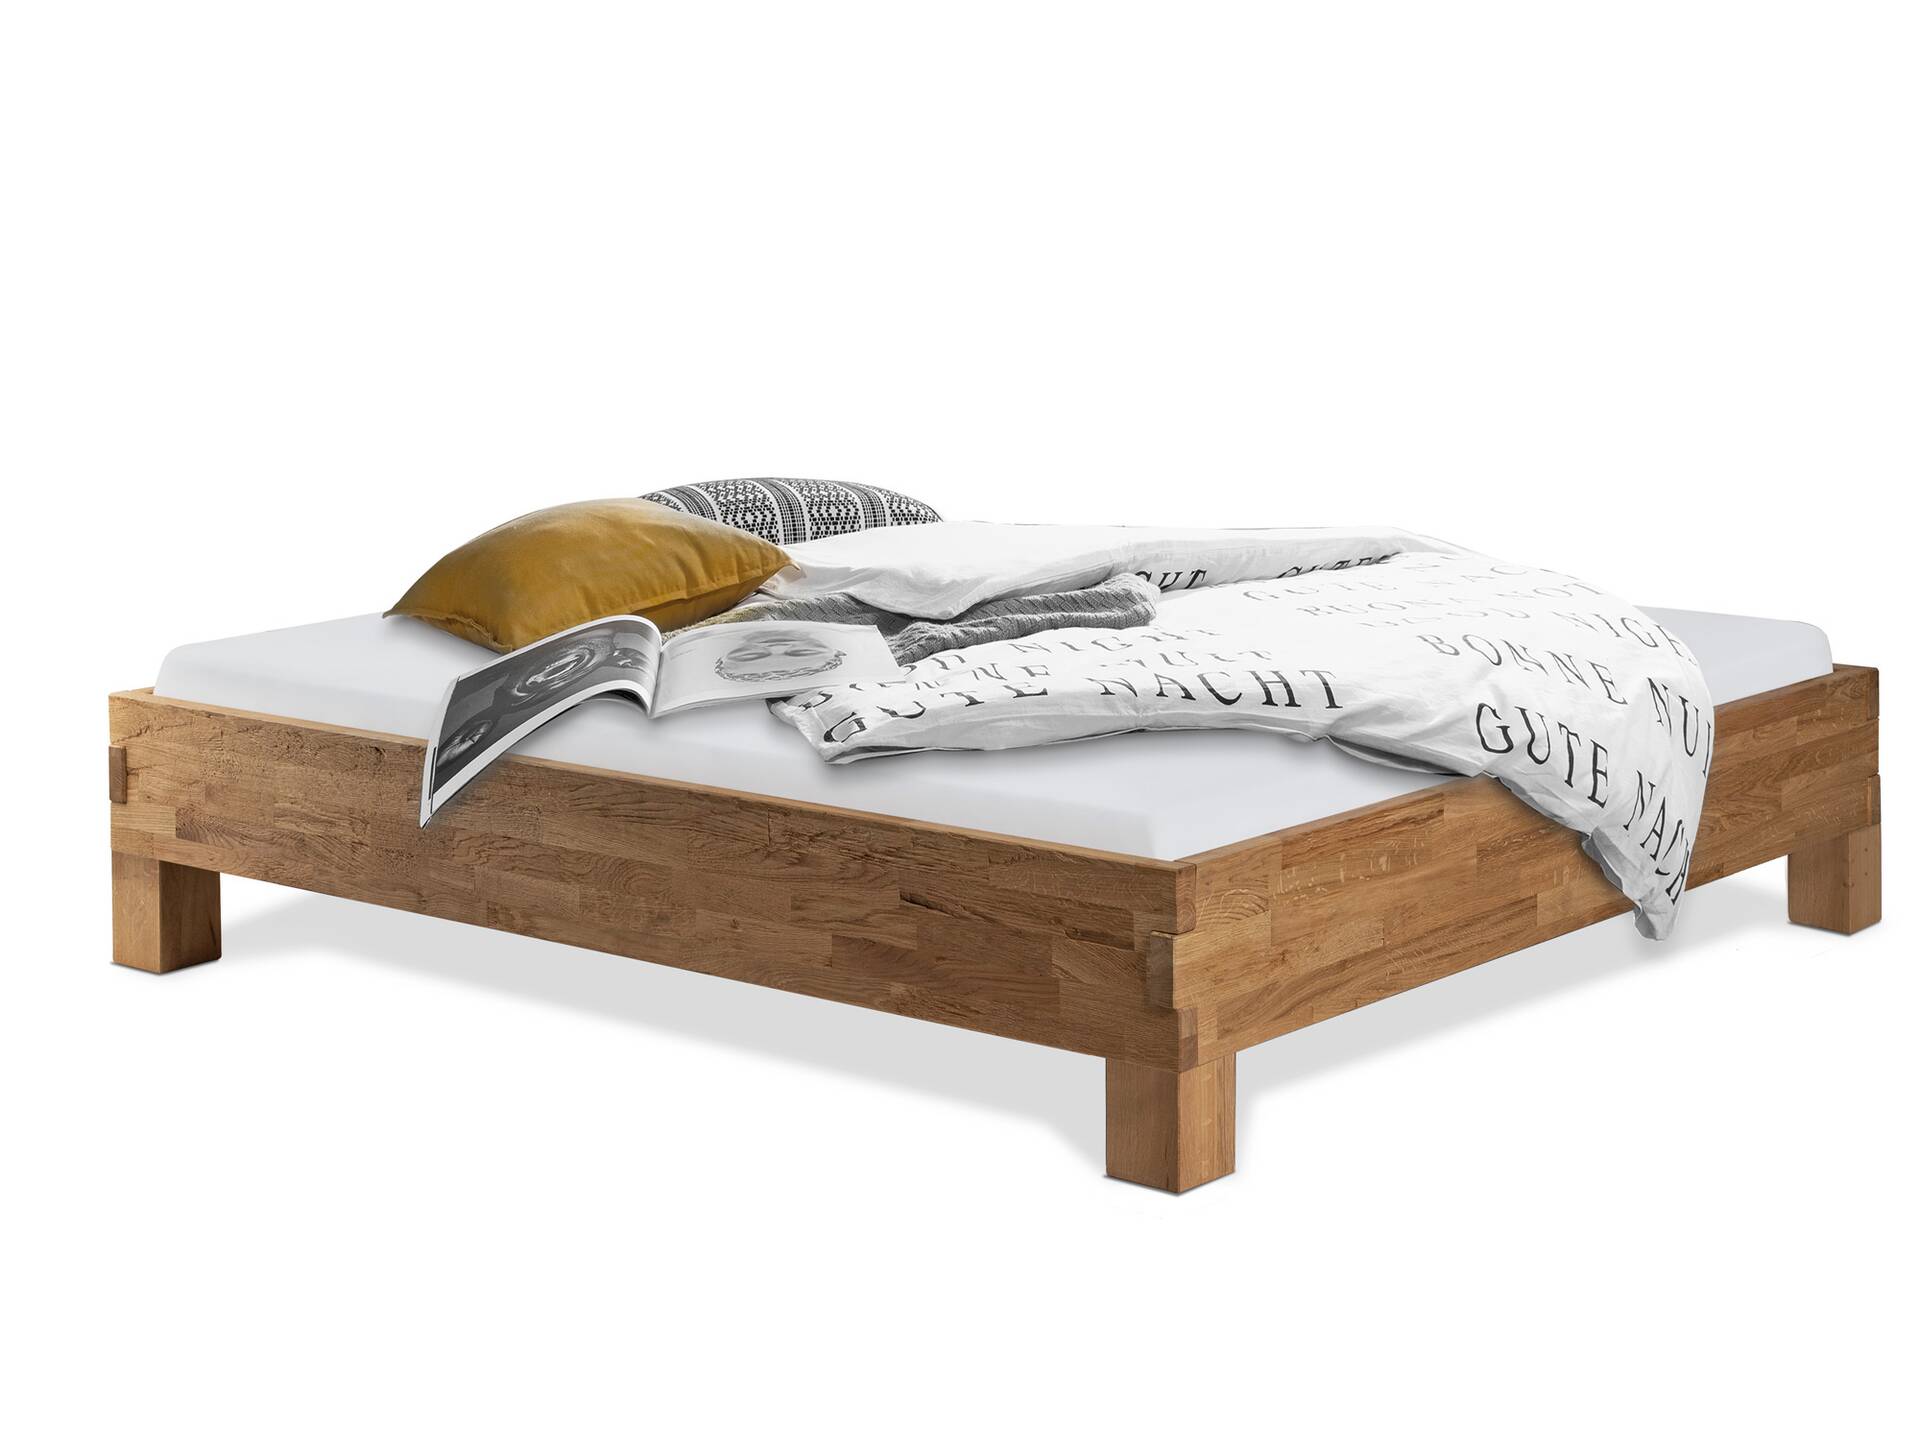 CORDINO 4-Fuß-Bett aus Eiche ohne Kopfteil, Material Massivholz 200 x 200 cm | Eiche unbehandelt | gehackt 